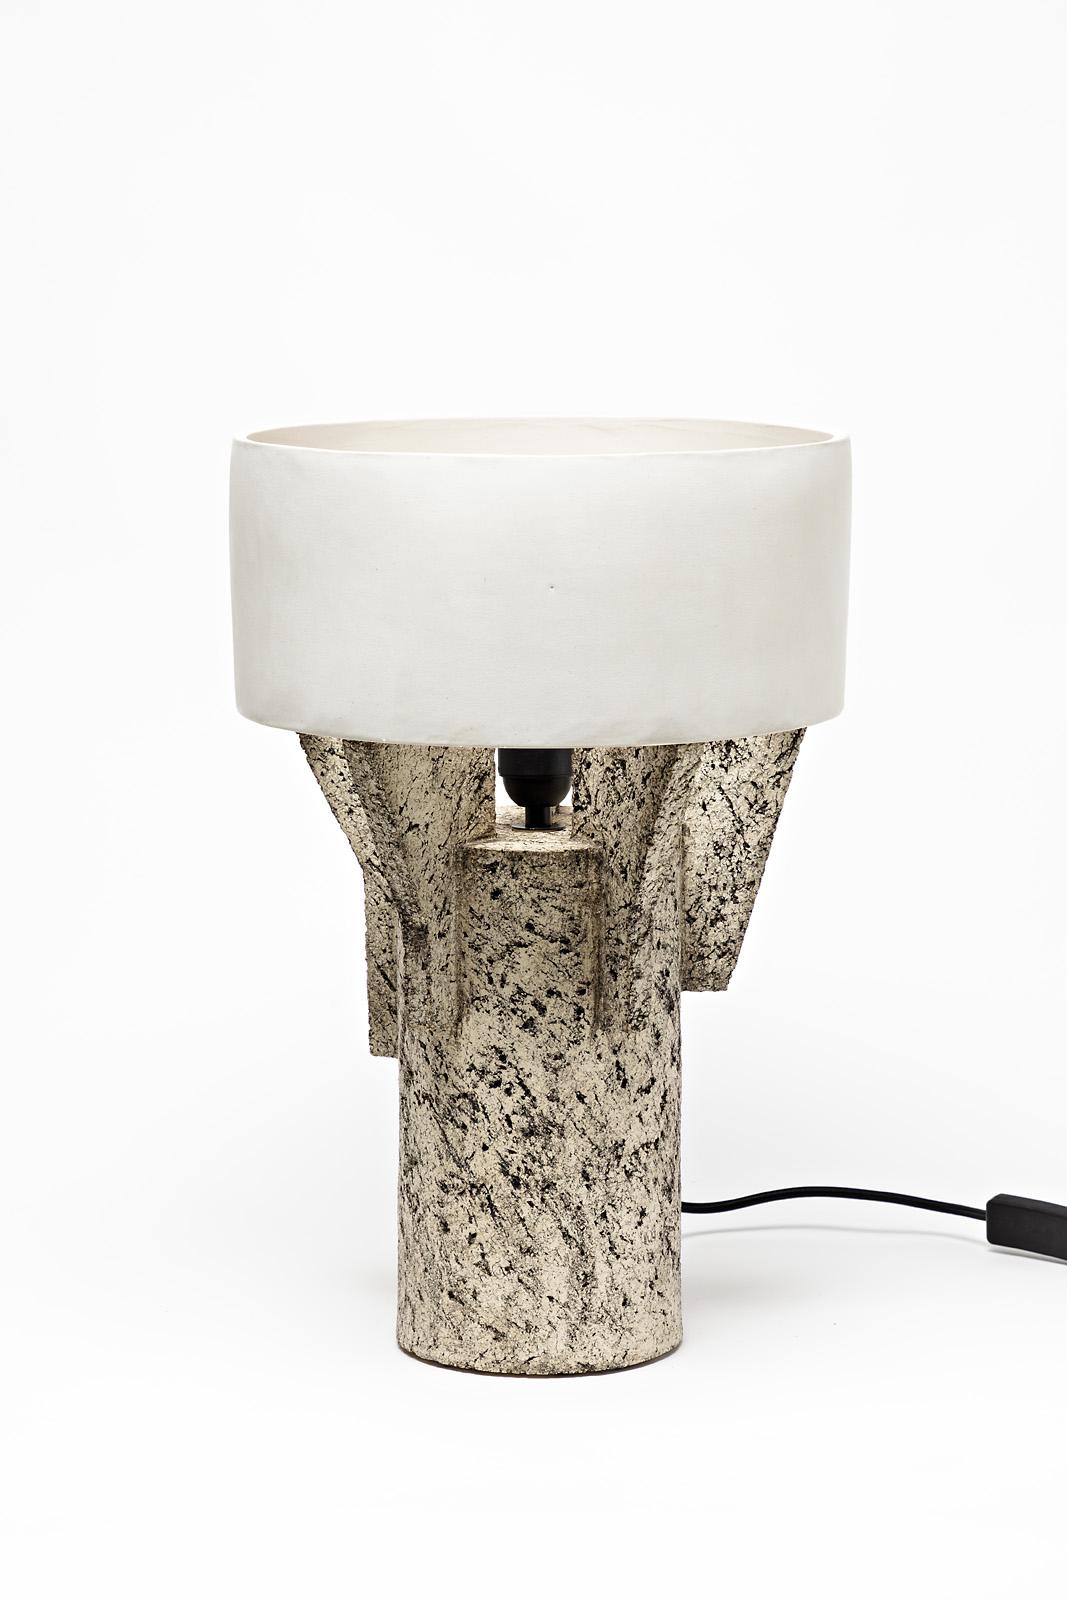 Tischlampe aus Keramik von Denis Castaing mit weißem Glasurdekor.
Der Sockel und der Lampenschirm sind aus Keramik.
Verkauft mit einem europäischen elektrischen System.
Perfekter Originalzustand,
2019.
Unter dem Sockel signiert.